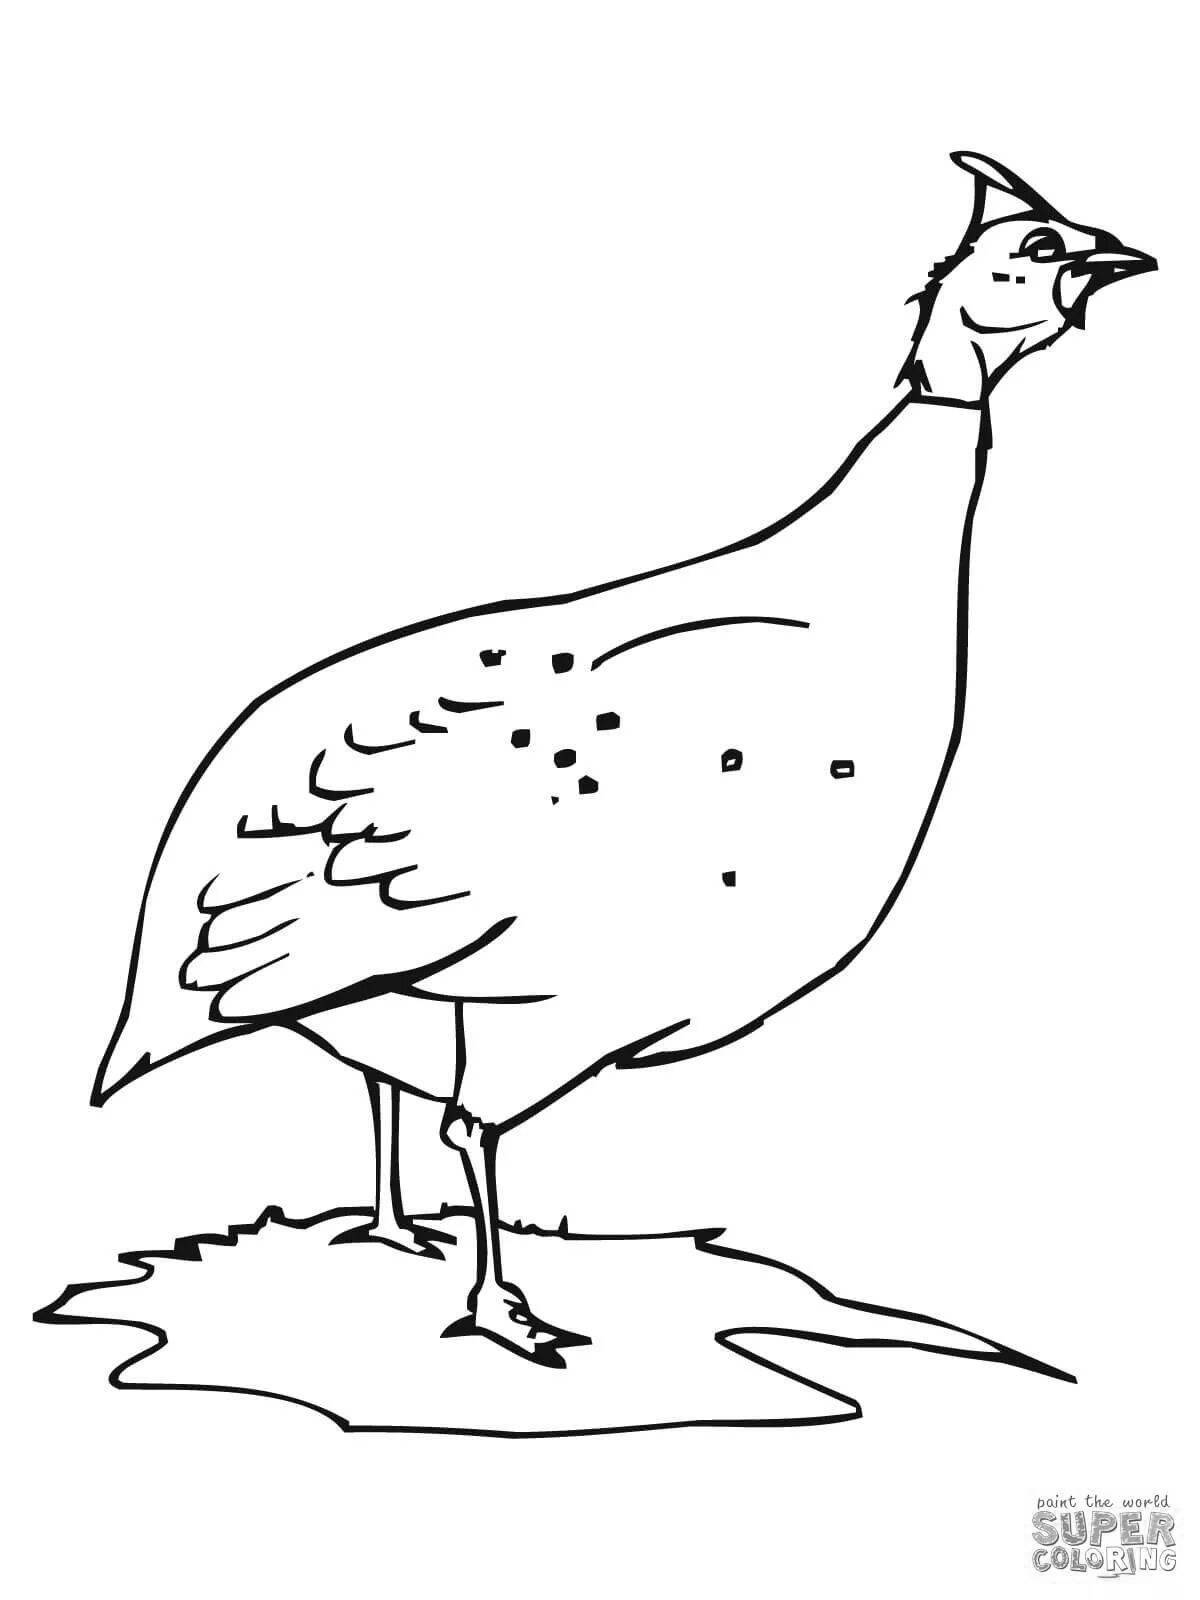 Humorous guinea fowl coloring book